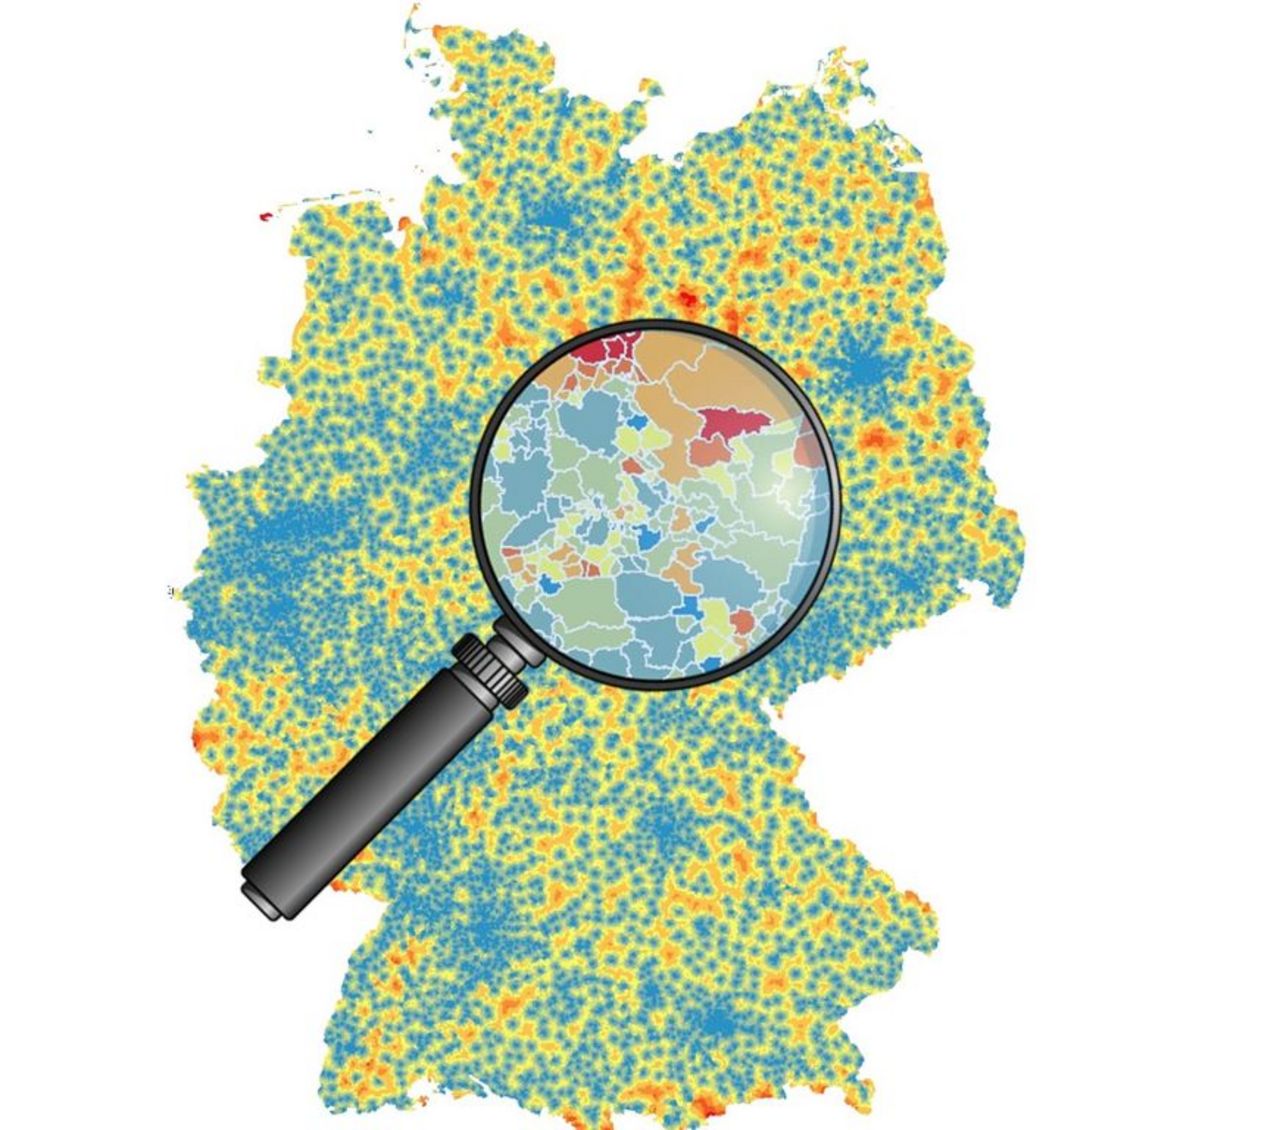 Rural areas in Germany in focus